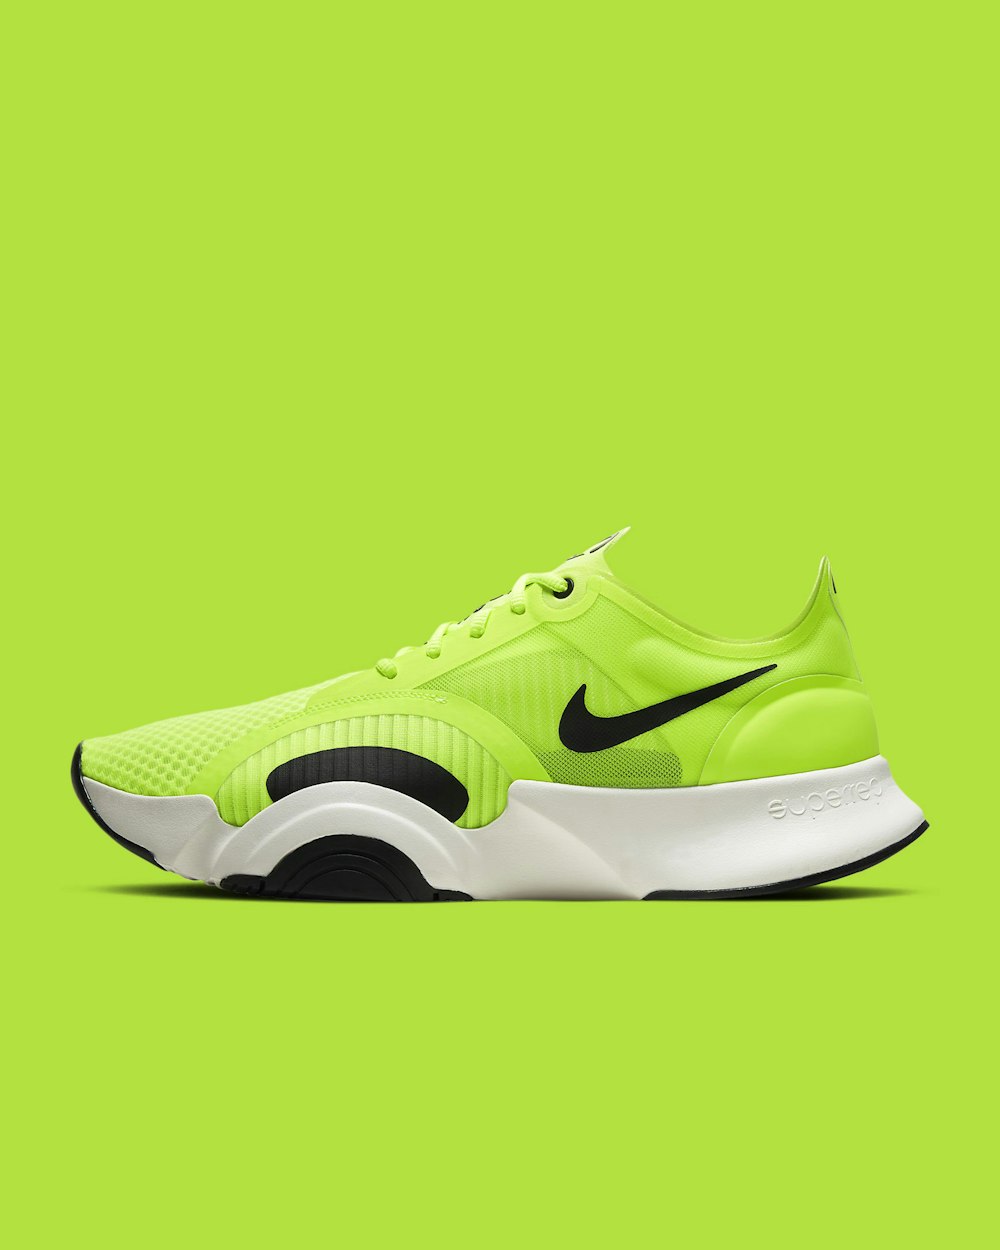 green and black nike athletic shoe photo – Free Fashion Image on Unsplash